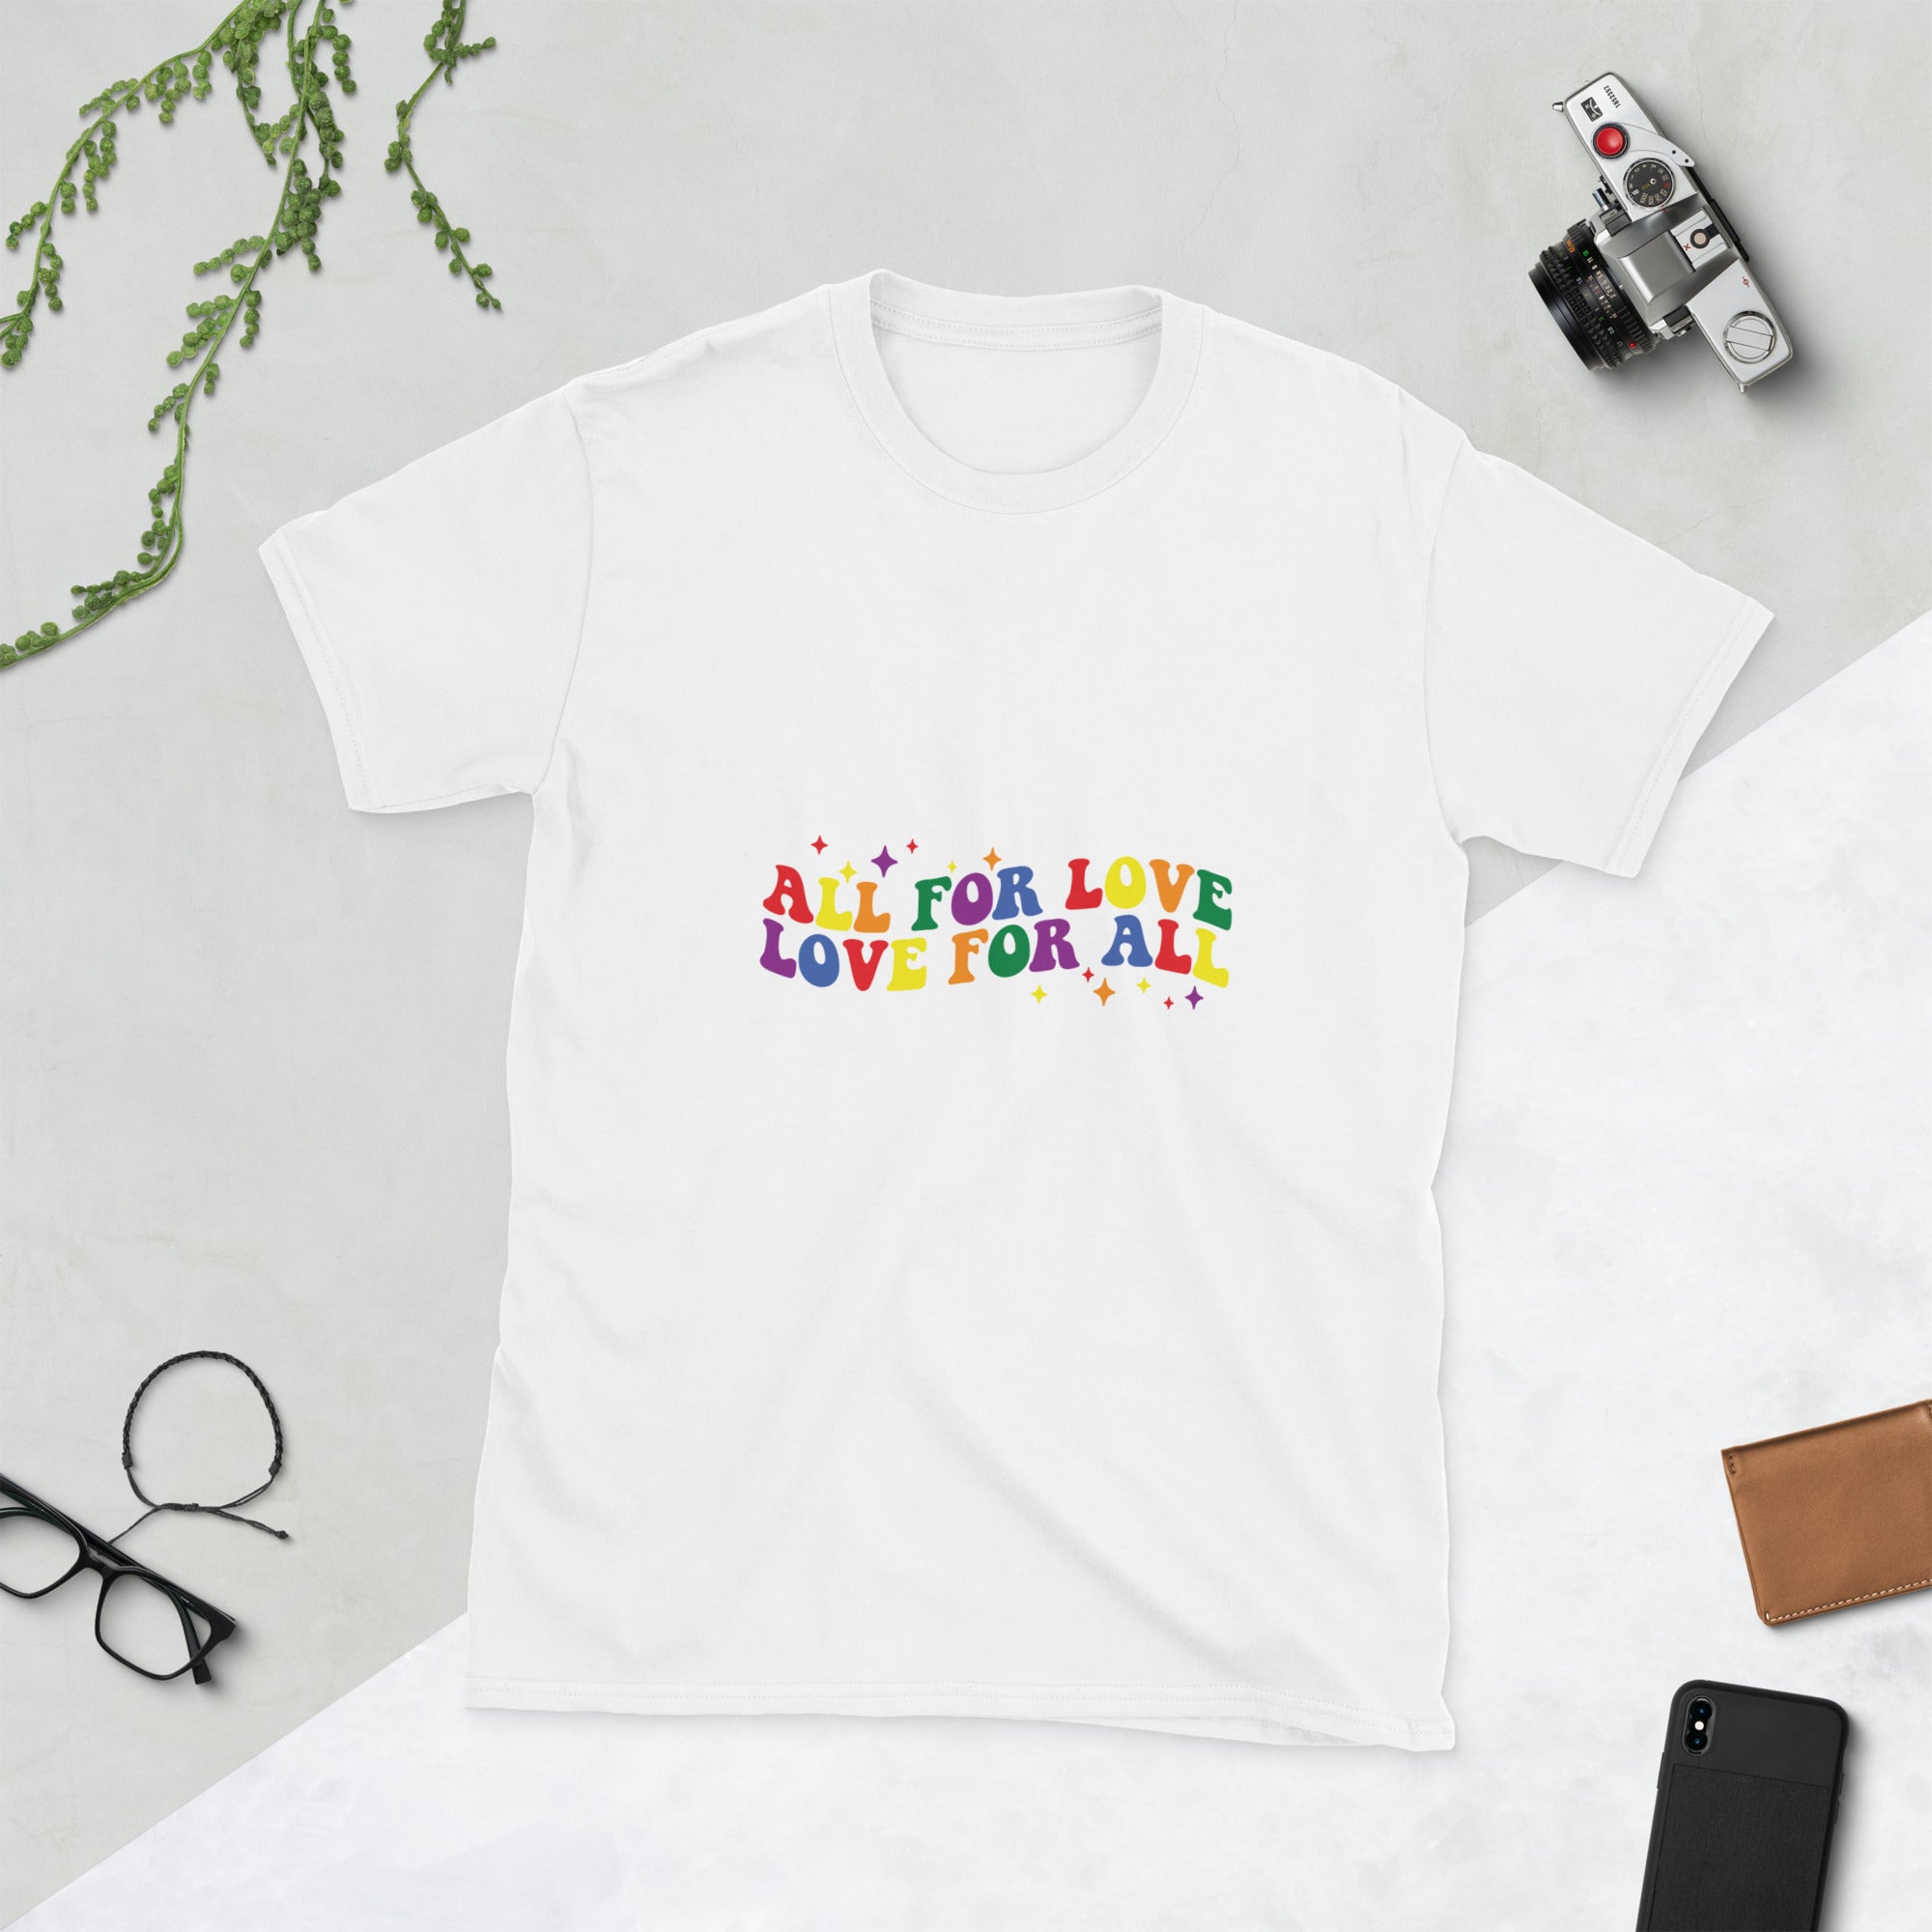 Short-Sleeve Unisex T-Shirt- All for love, love for all